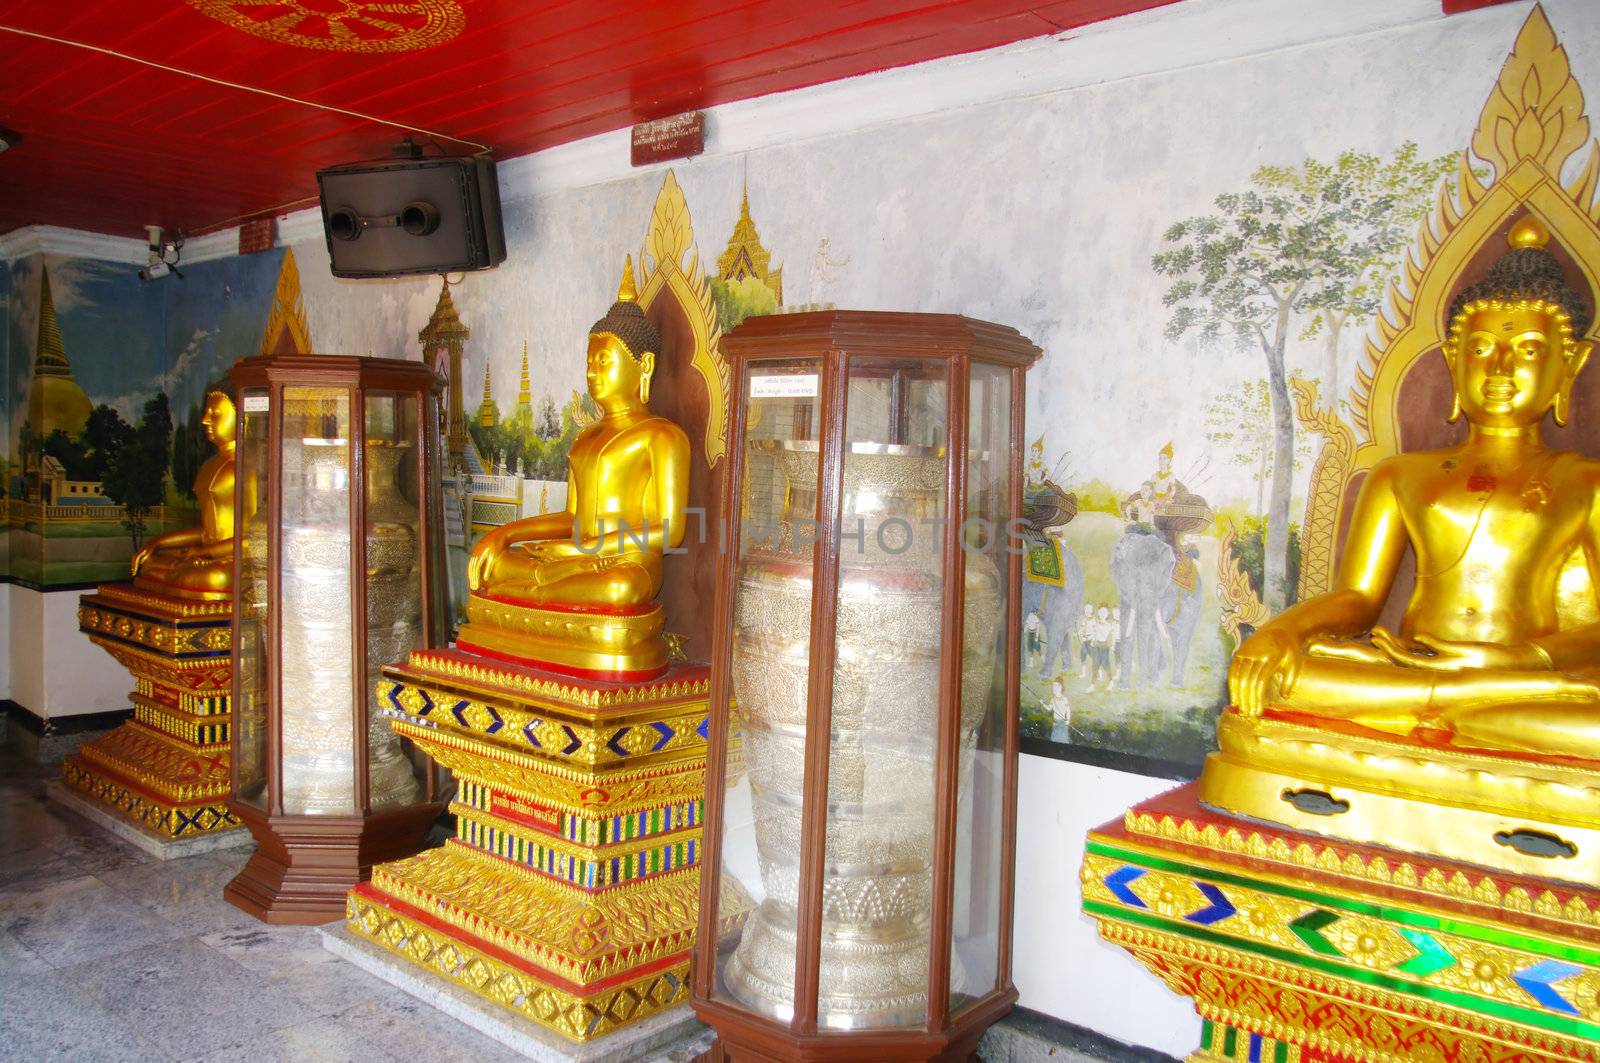 Dans un hall du temple de Wat Phrathat Doi Suthep à Chiang Mai au nord-ouest de la Thaïlande , des bouddhas et des jarres en argent fermées dans des chasses vitrées .
Les milliers de fidèles qui viennent journellement visiter le temple , laissent des sommes importantes d’argent . Le temple est extrêmement  riche au popint que d’autres temples moins fréquentés de la région déposent des urnes pour profiter de cette manne financière .